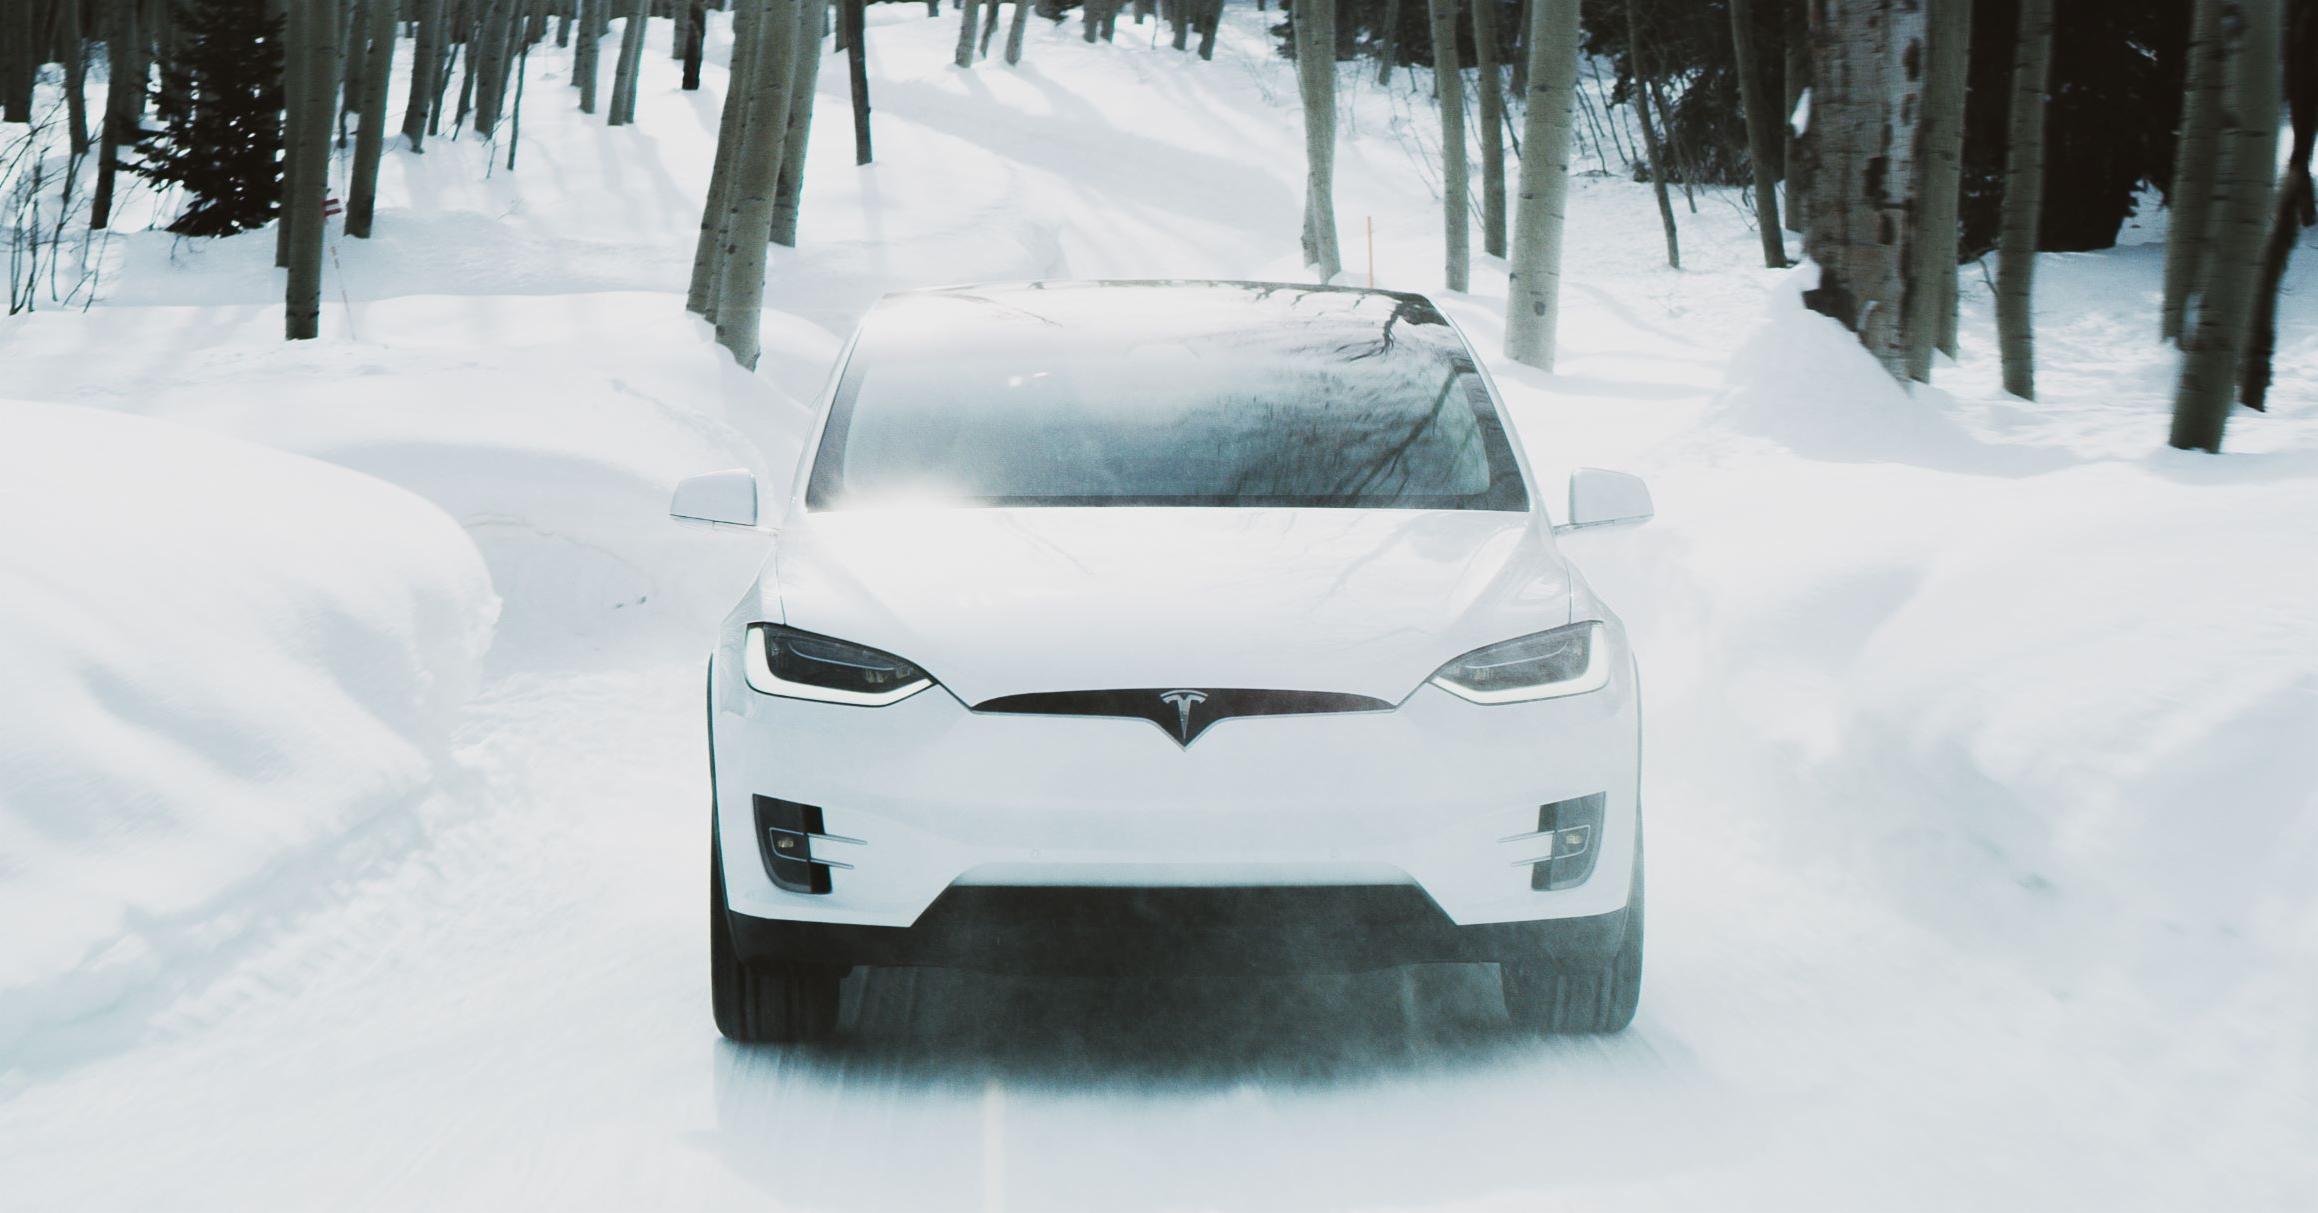 Südkorea verurteilt Tesla zu einer Geldstrafe von 2,2 Millionen Dollar wegen fehlender Informationen über die geringere Reichweite von Elektroautos bei eisigen Temperaturen